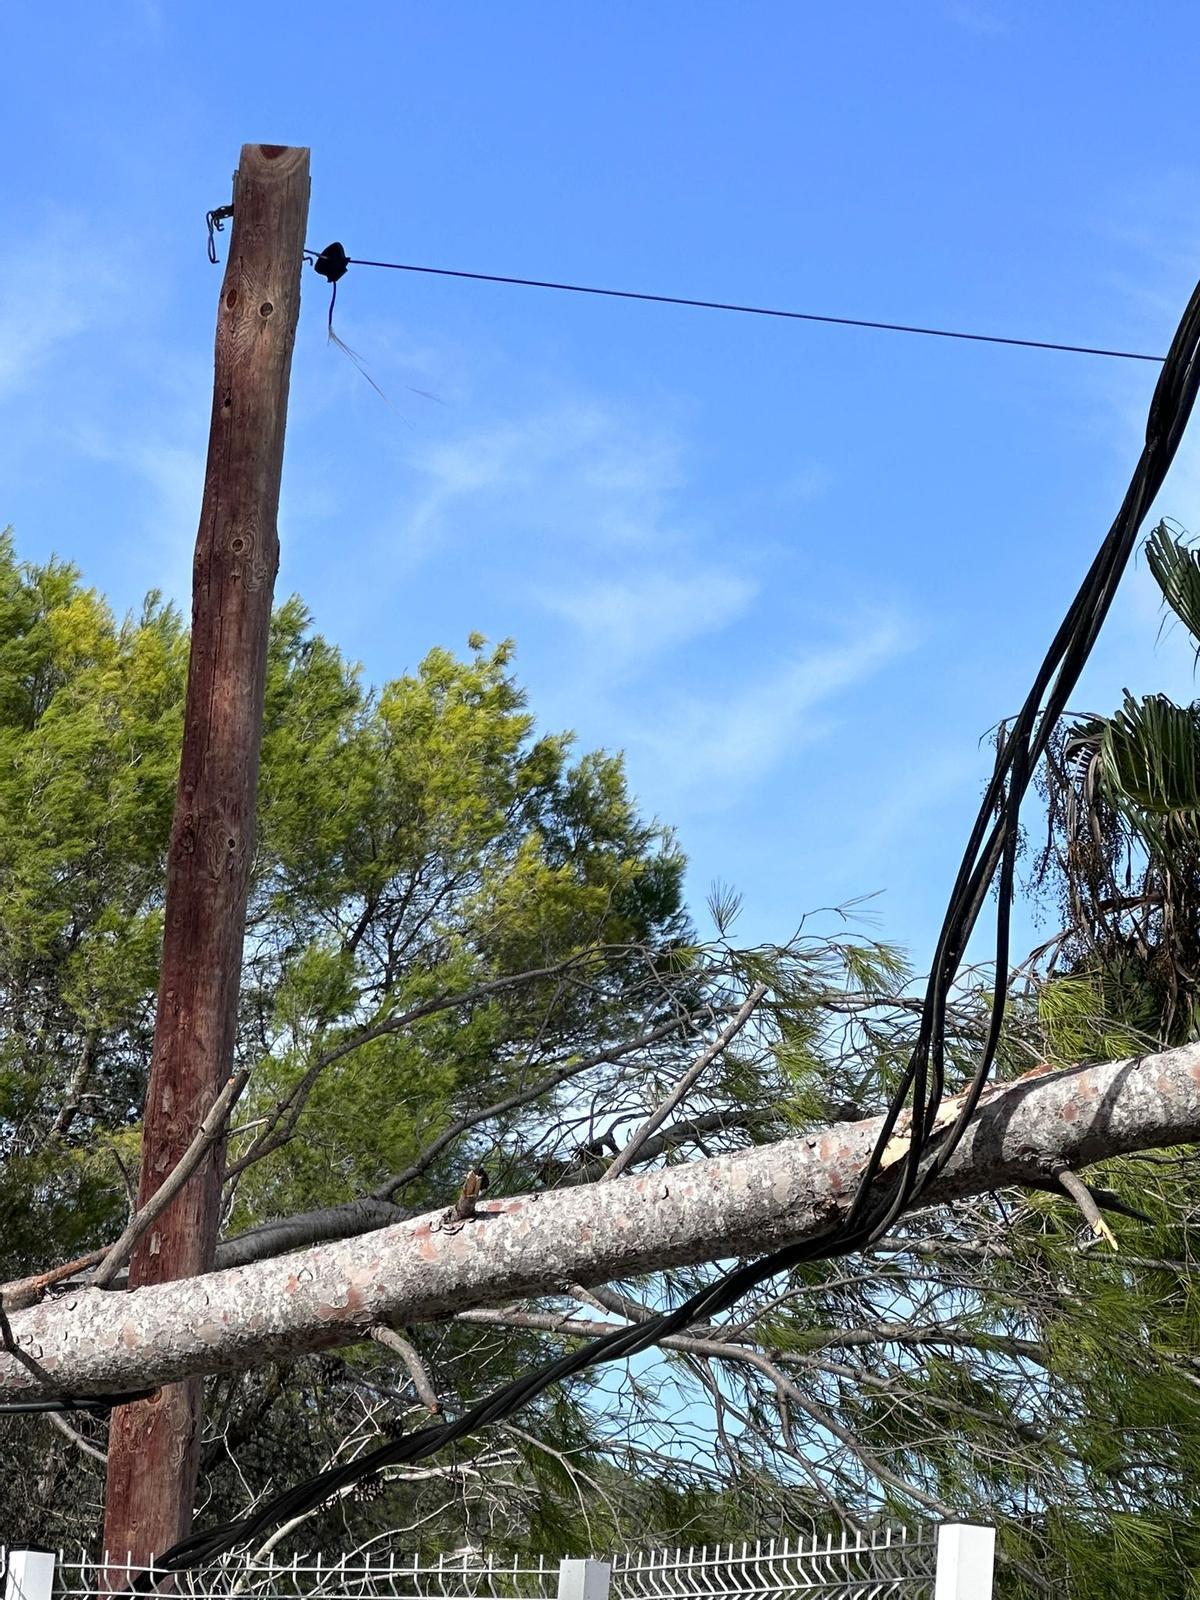 El pino cortó el tendido eléctrico y dejó sin suministro a varios vecinos de Bixquert.